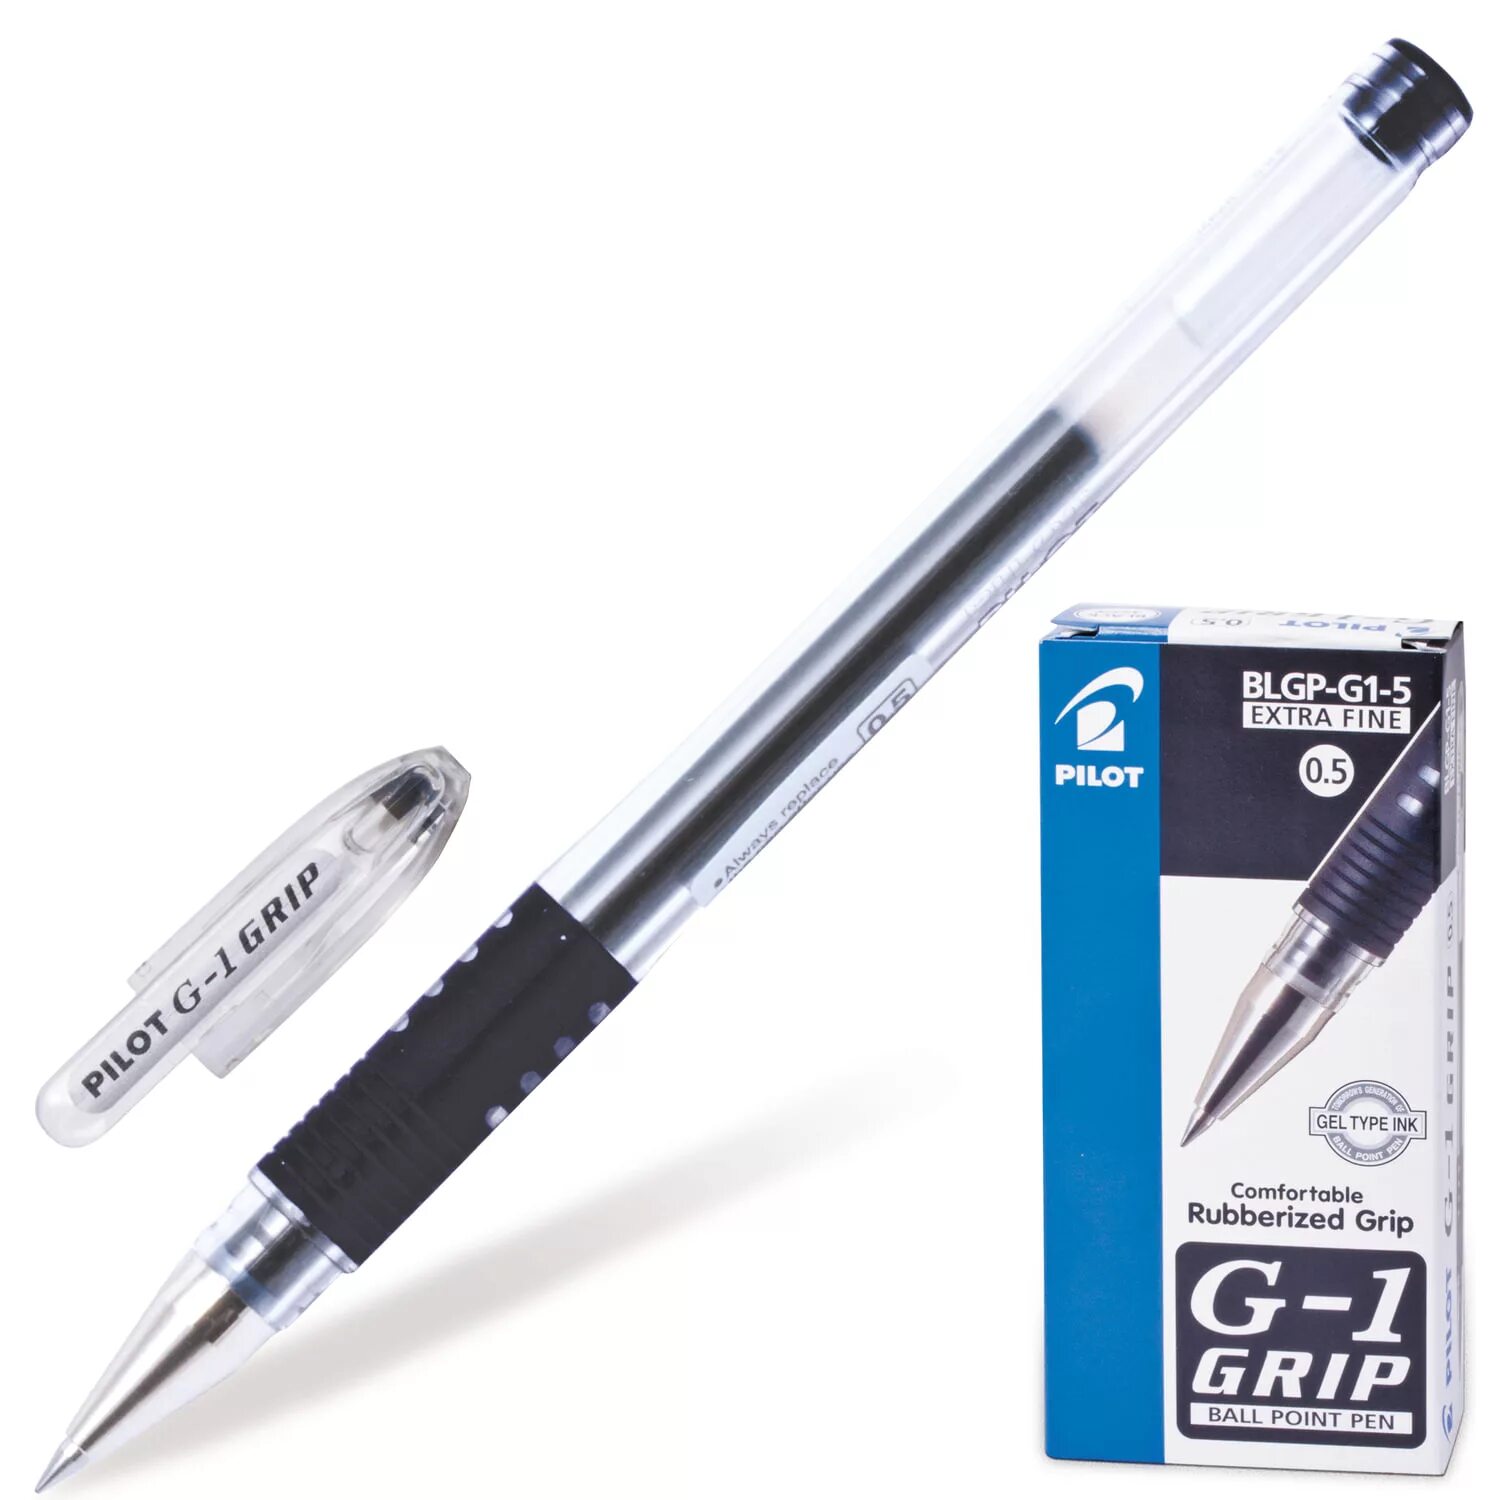 Первые гелевые ручки. Ручка гелевая черная Pilot 0,5(0,3)мм. Ручка гелевая Pilot BL-g1-5t синяя 0,3мм. Ручка гелевая автоматическая Pilot g2-5 синяя 0,5 мм. Ручки пилот 0.5 гелевая.